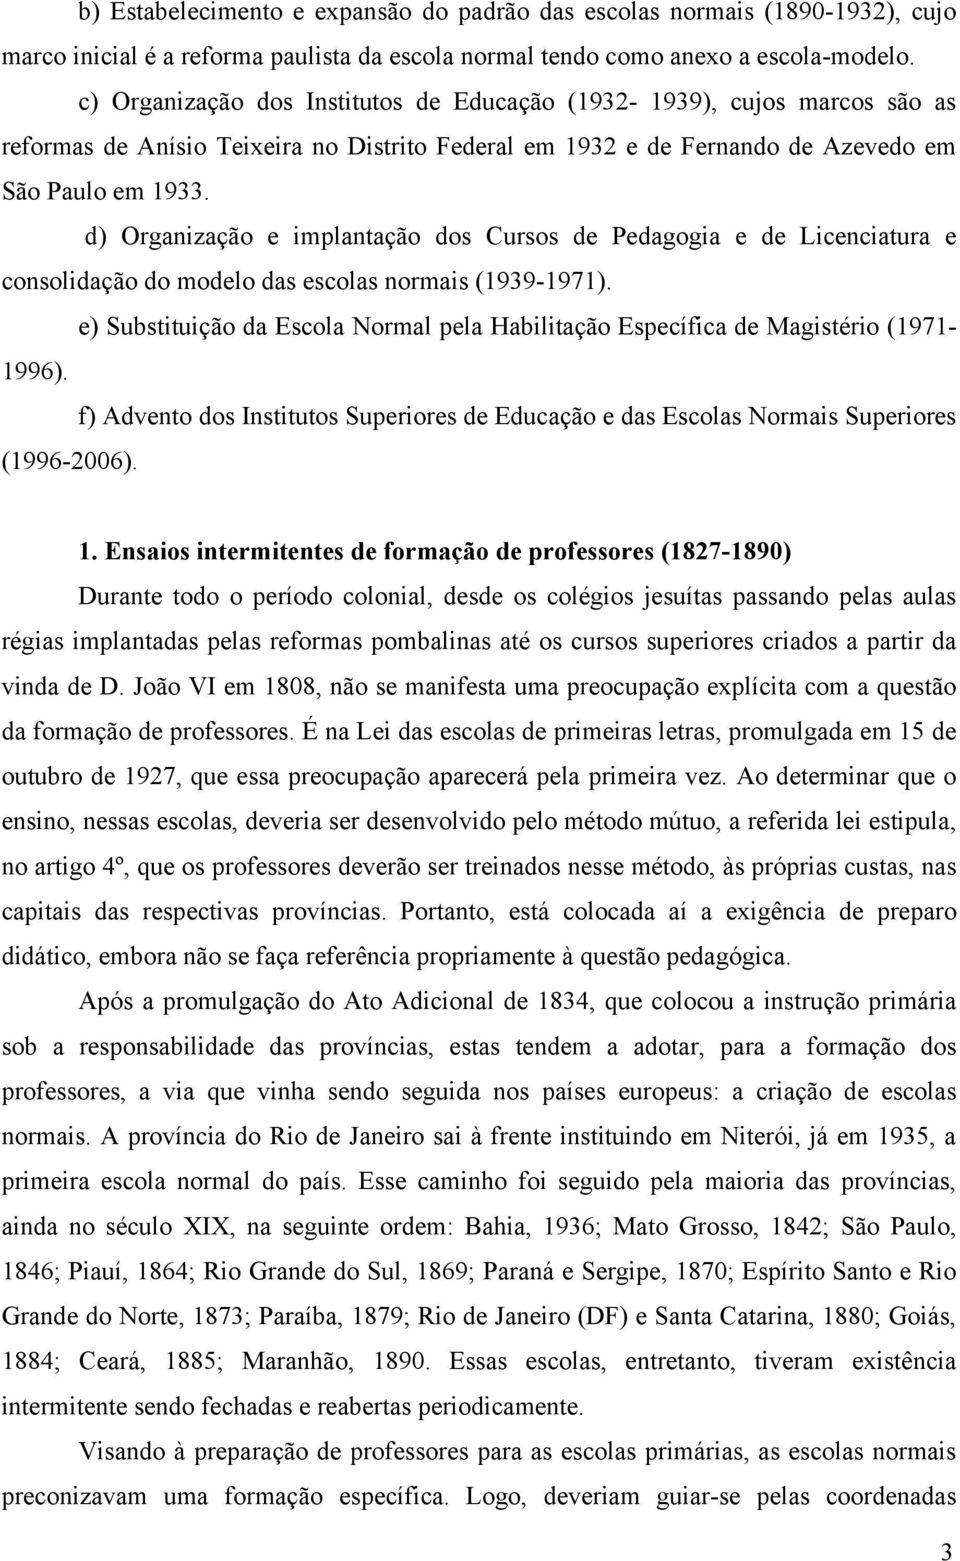 d) Organização e implantação dos Cursos de Pedagogia e de Licenciatura e consolidação do modelo das escolas normais (1939-1971).